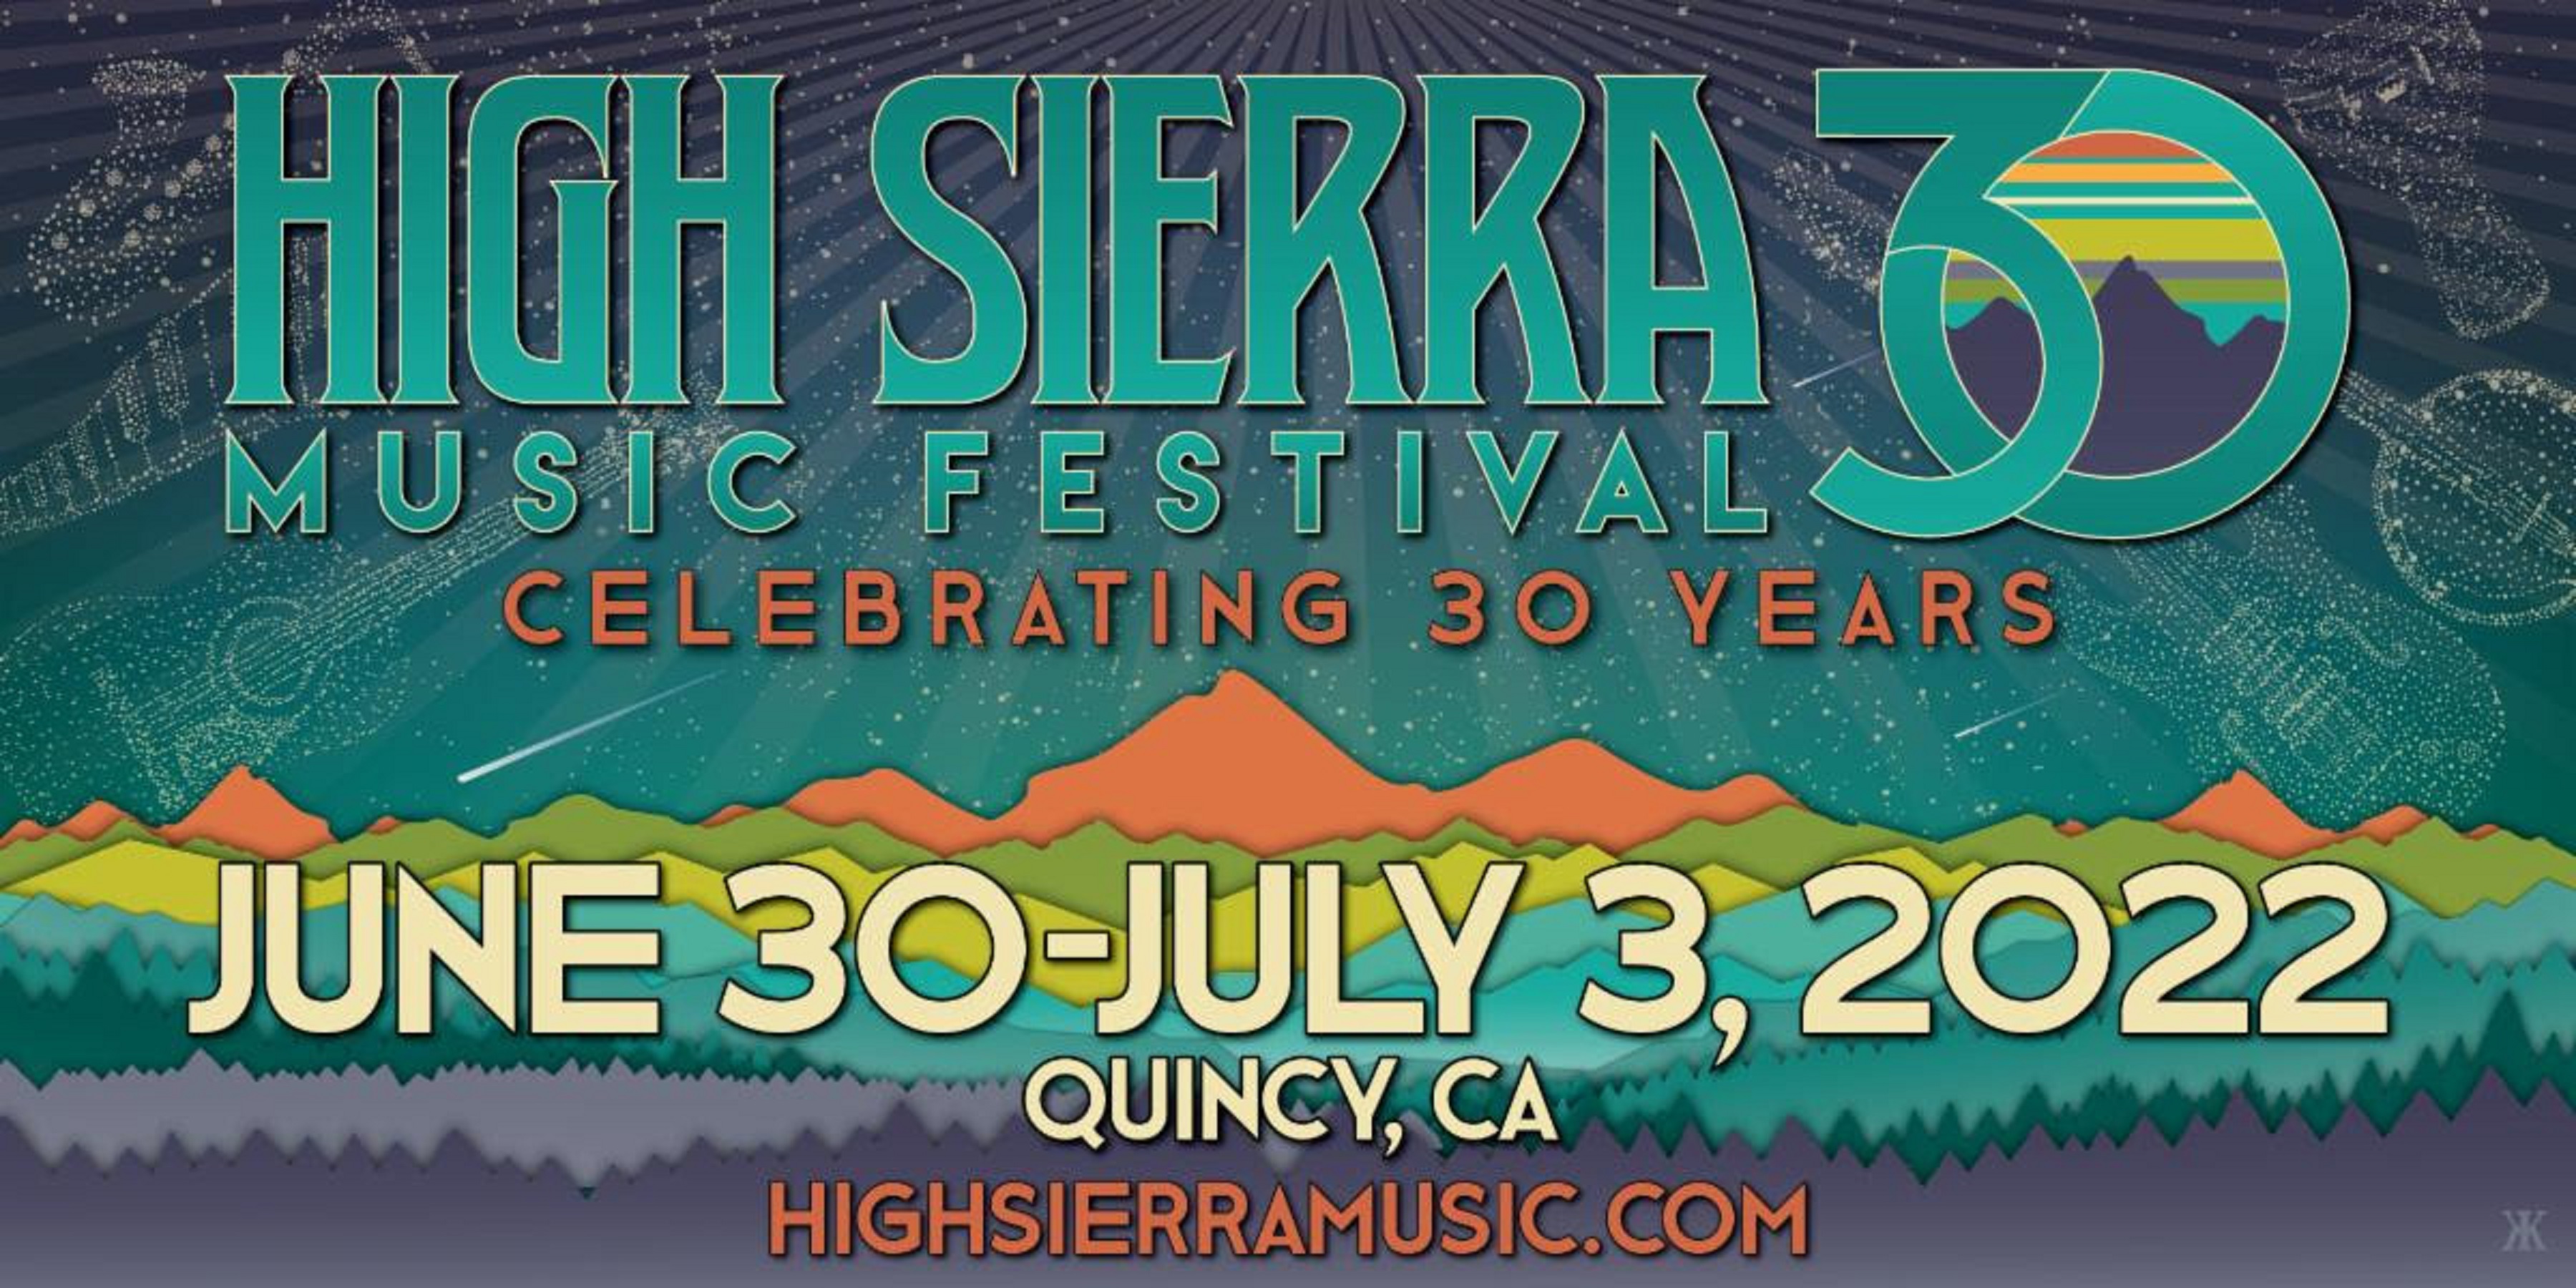 High Sierra Music Festival Returns for 30th Anniversary